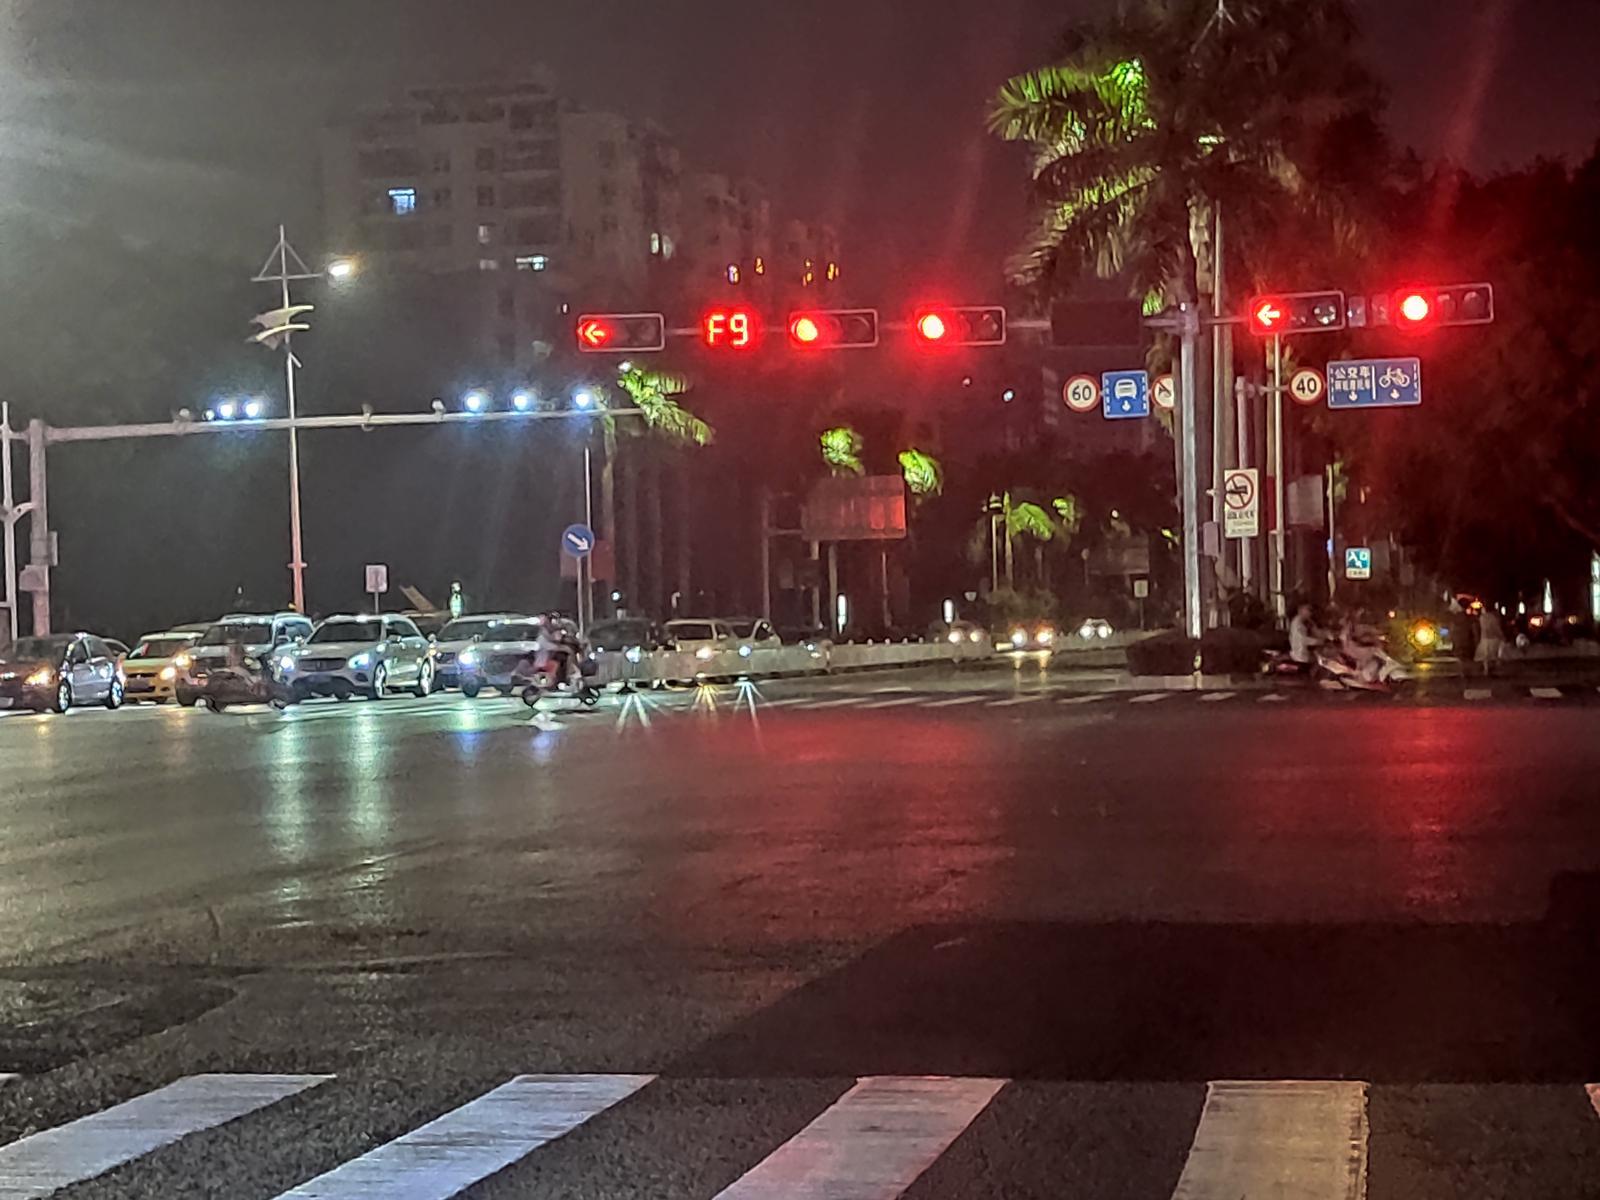 大家注意!北海大道3个路口的红绿灯出现异常!